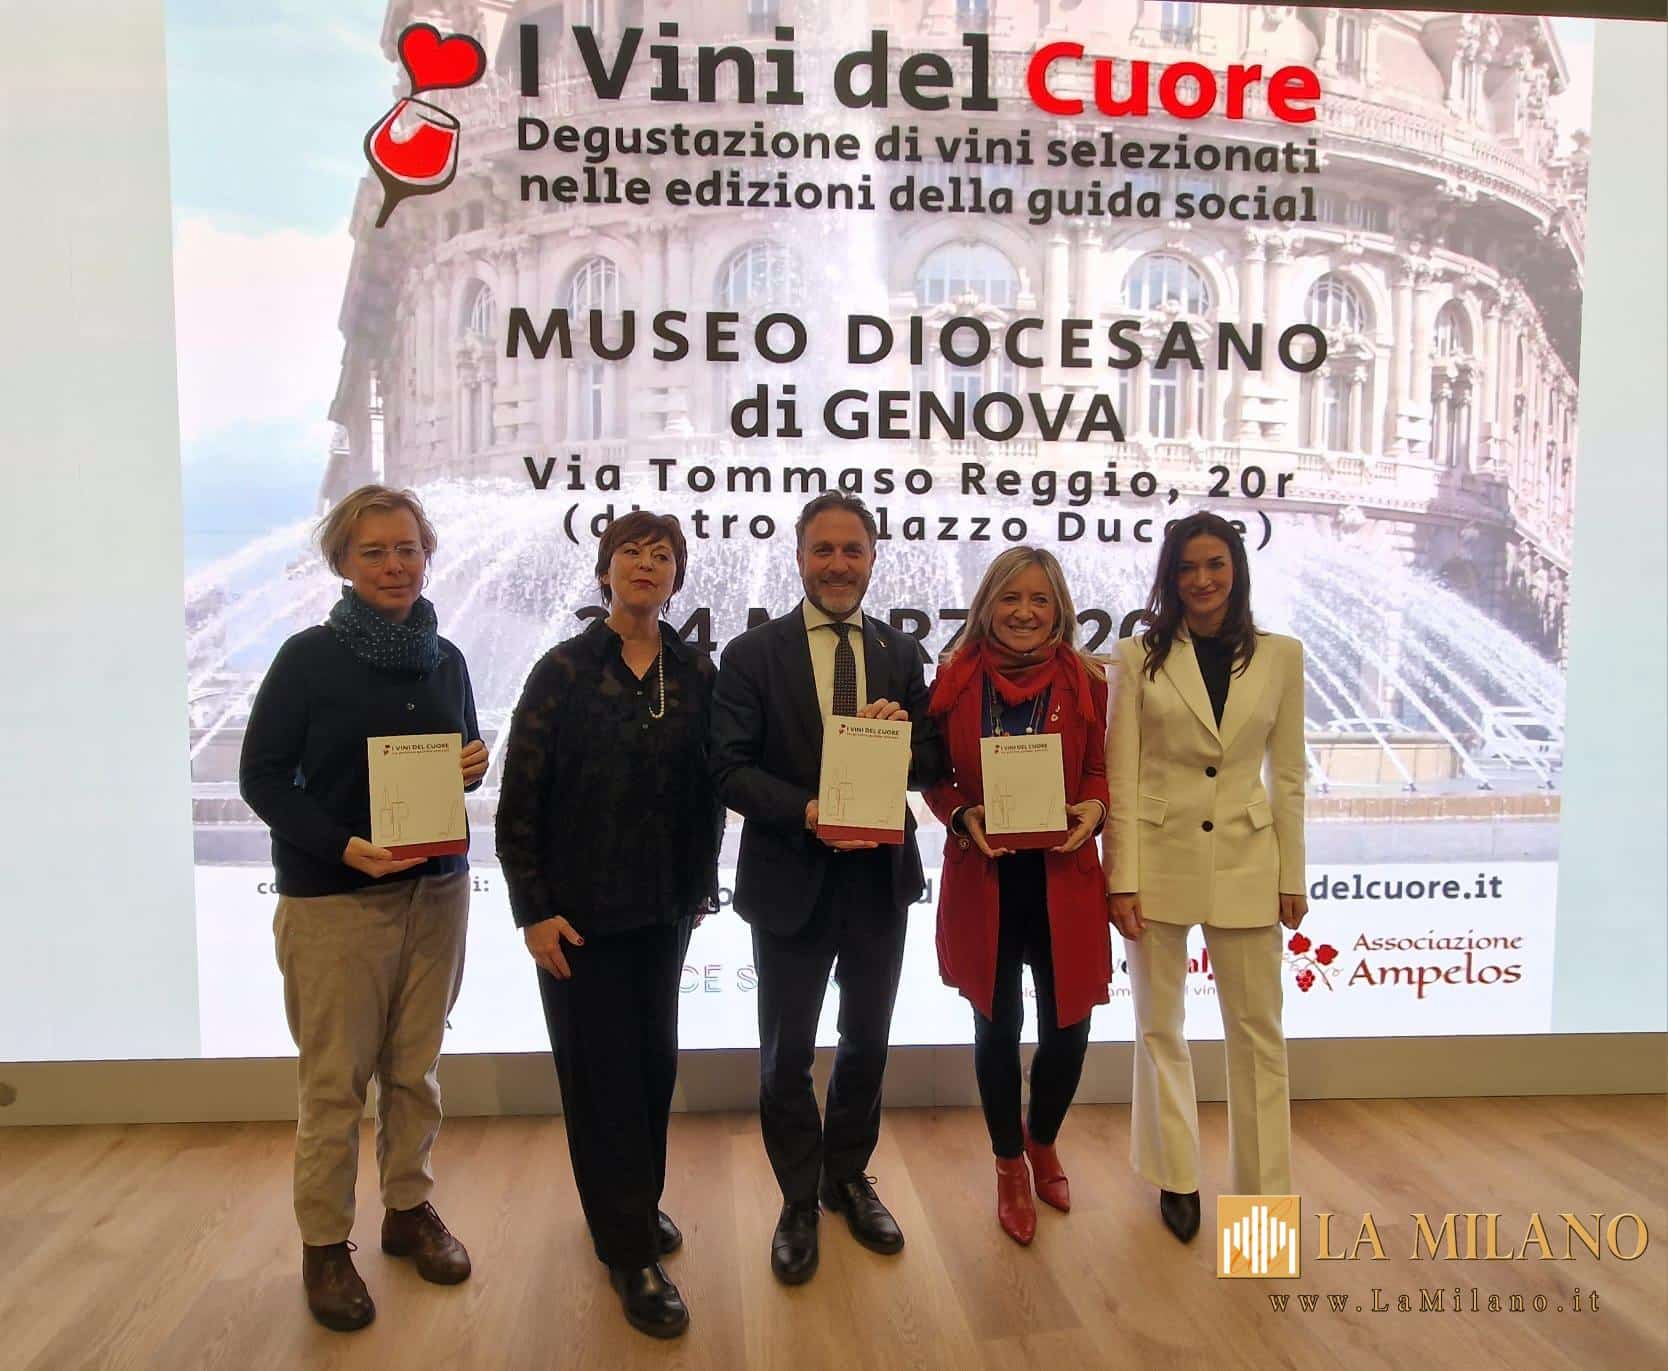 Genova, marketing territoriale, Vice Presidente Alessandra Piana: "al via a Genova la terza edizione dei vini del cuore".